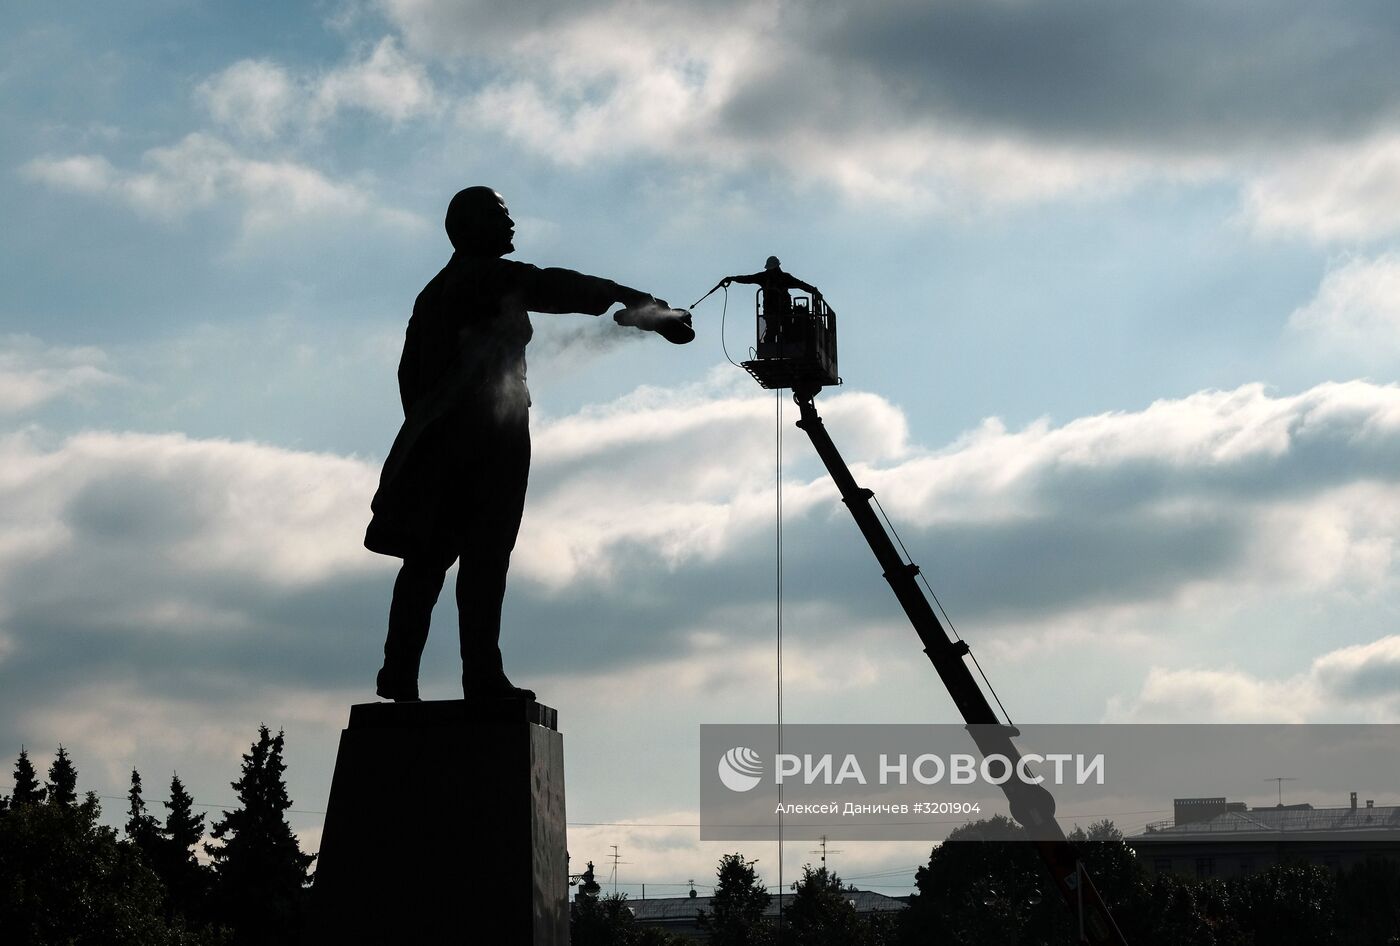 Мойка памятника В. И. Ленину на Московской площади в Санкт-Петербурге